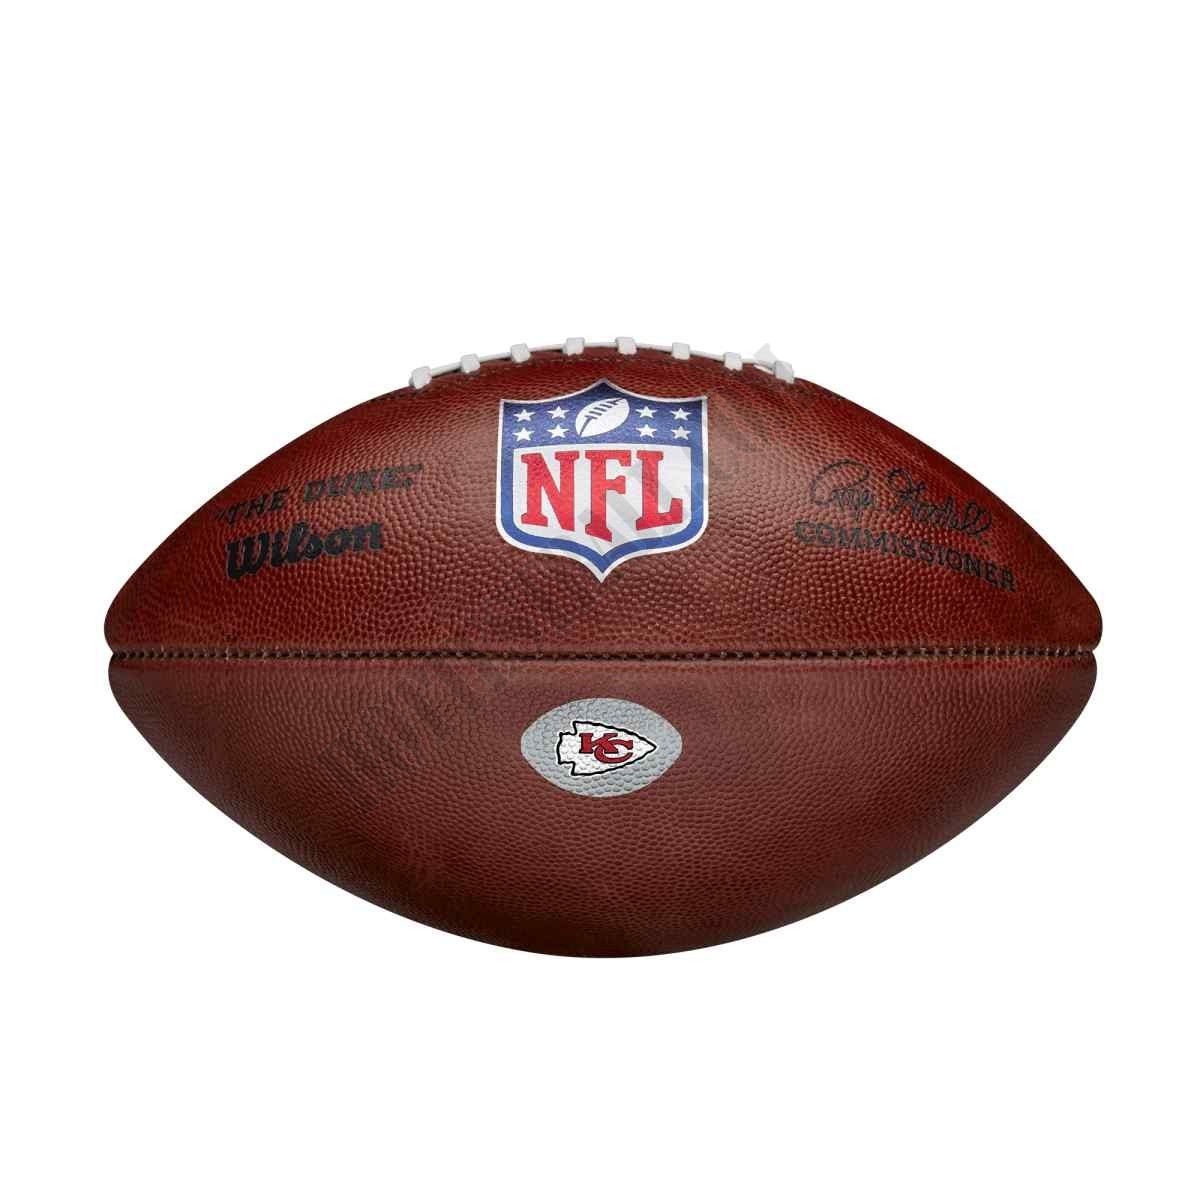 The Duke Decal NFL Football - Kansas City Chiefs - Wilson Discount Store - -0